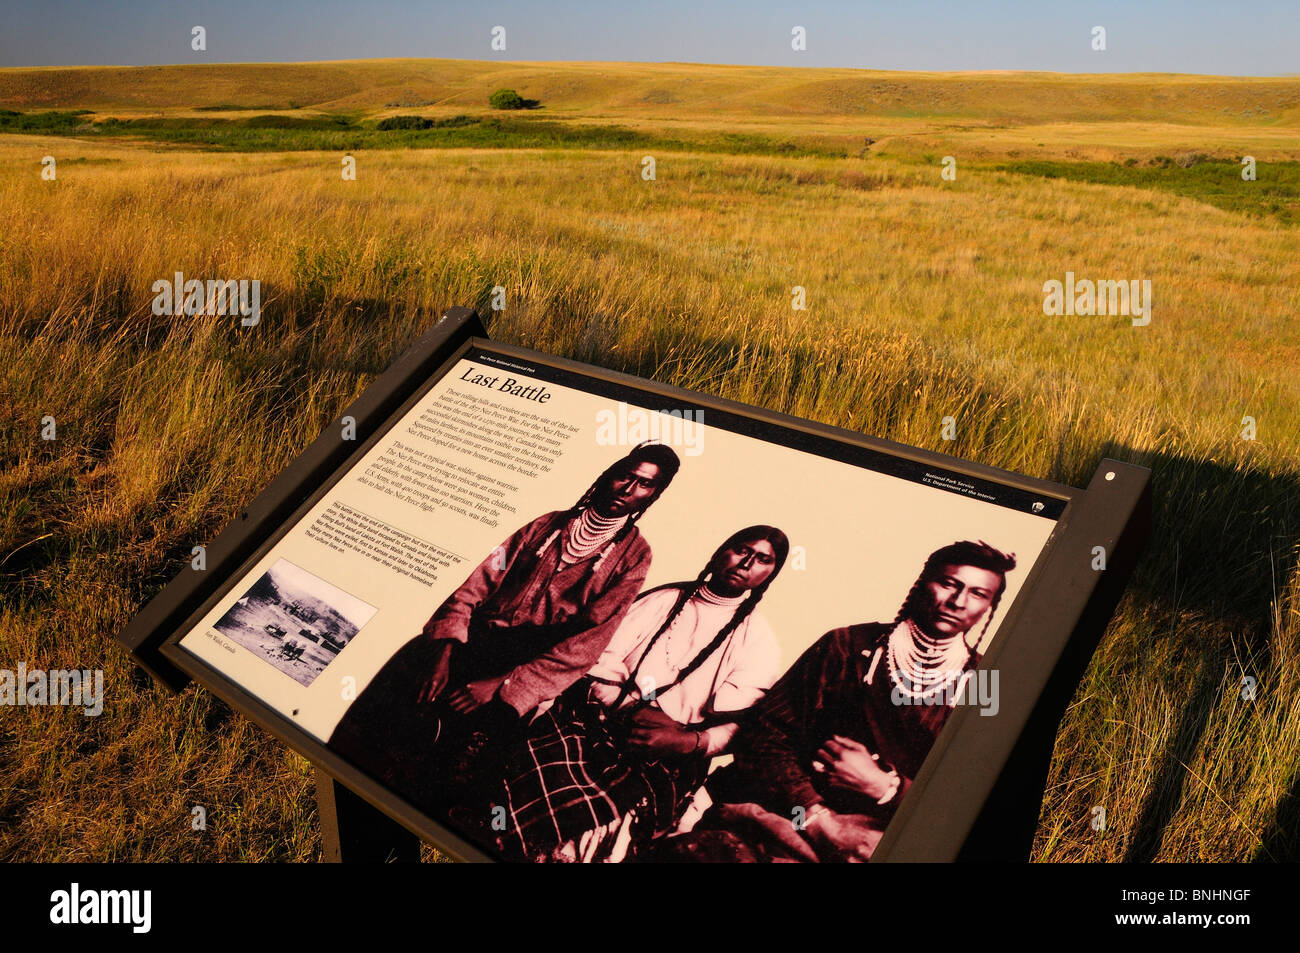 USA Bear Paw Battlefield Nez Perce National Historic Park près de Montana Chinook américains autochtones Premières nations autochtones d'Amérique Banque D'Images